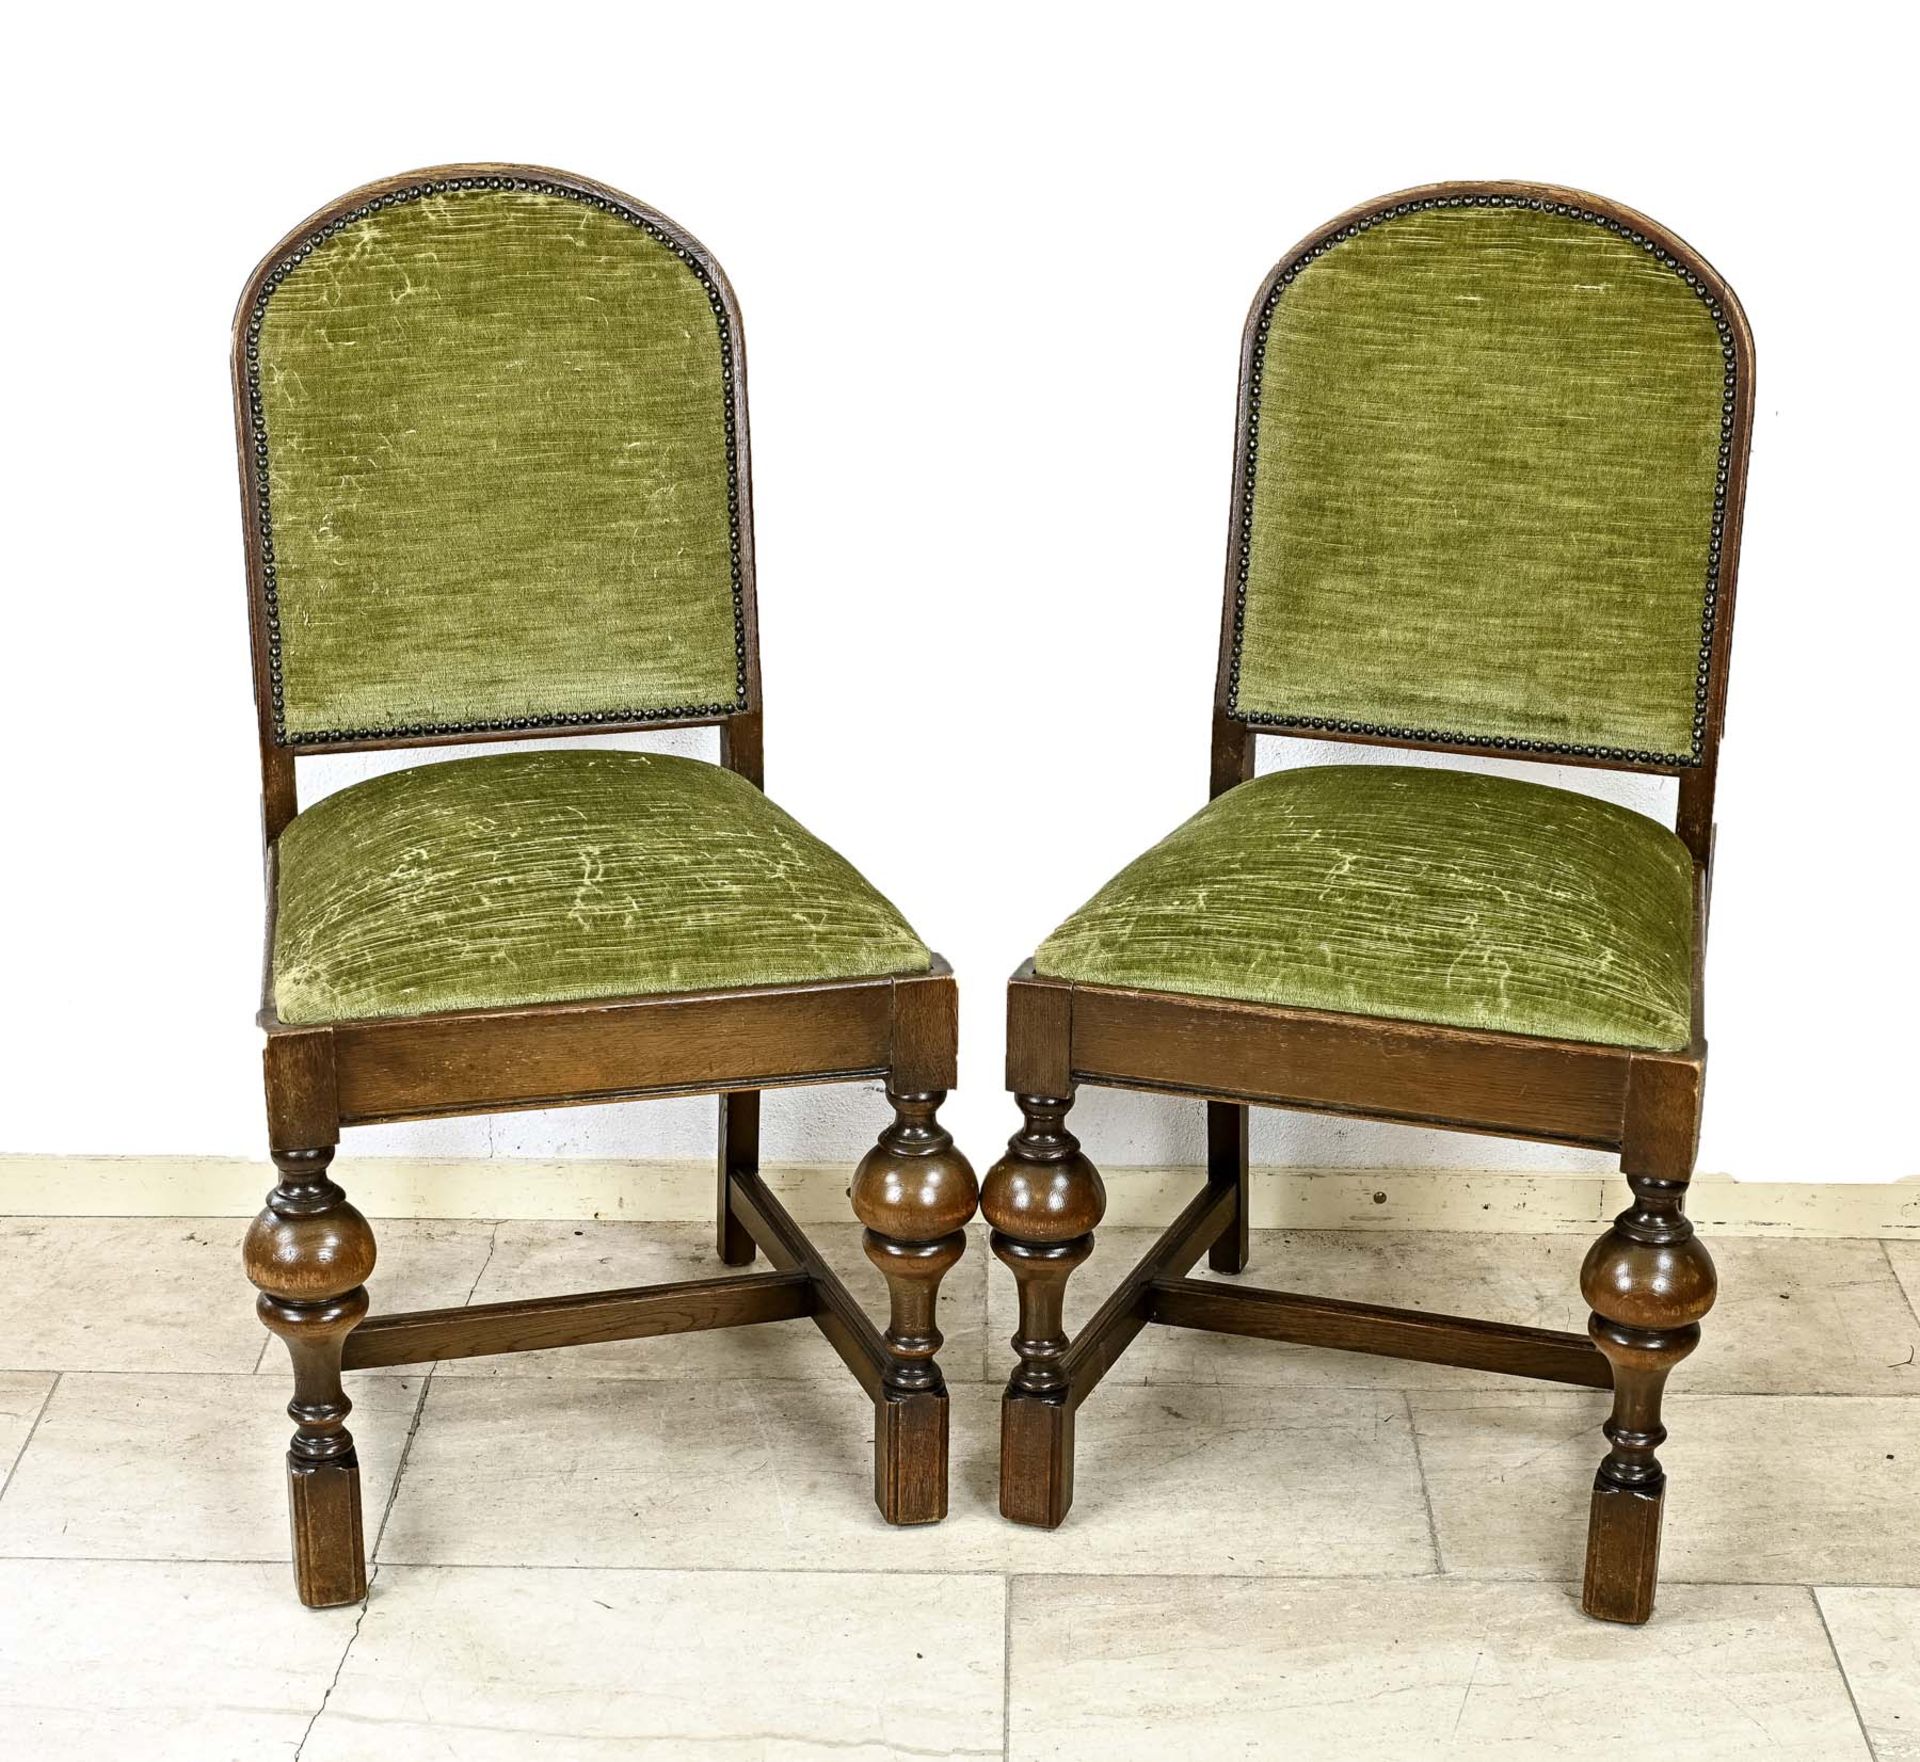 Four antique oak chairs, 1930